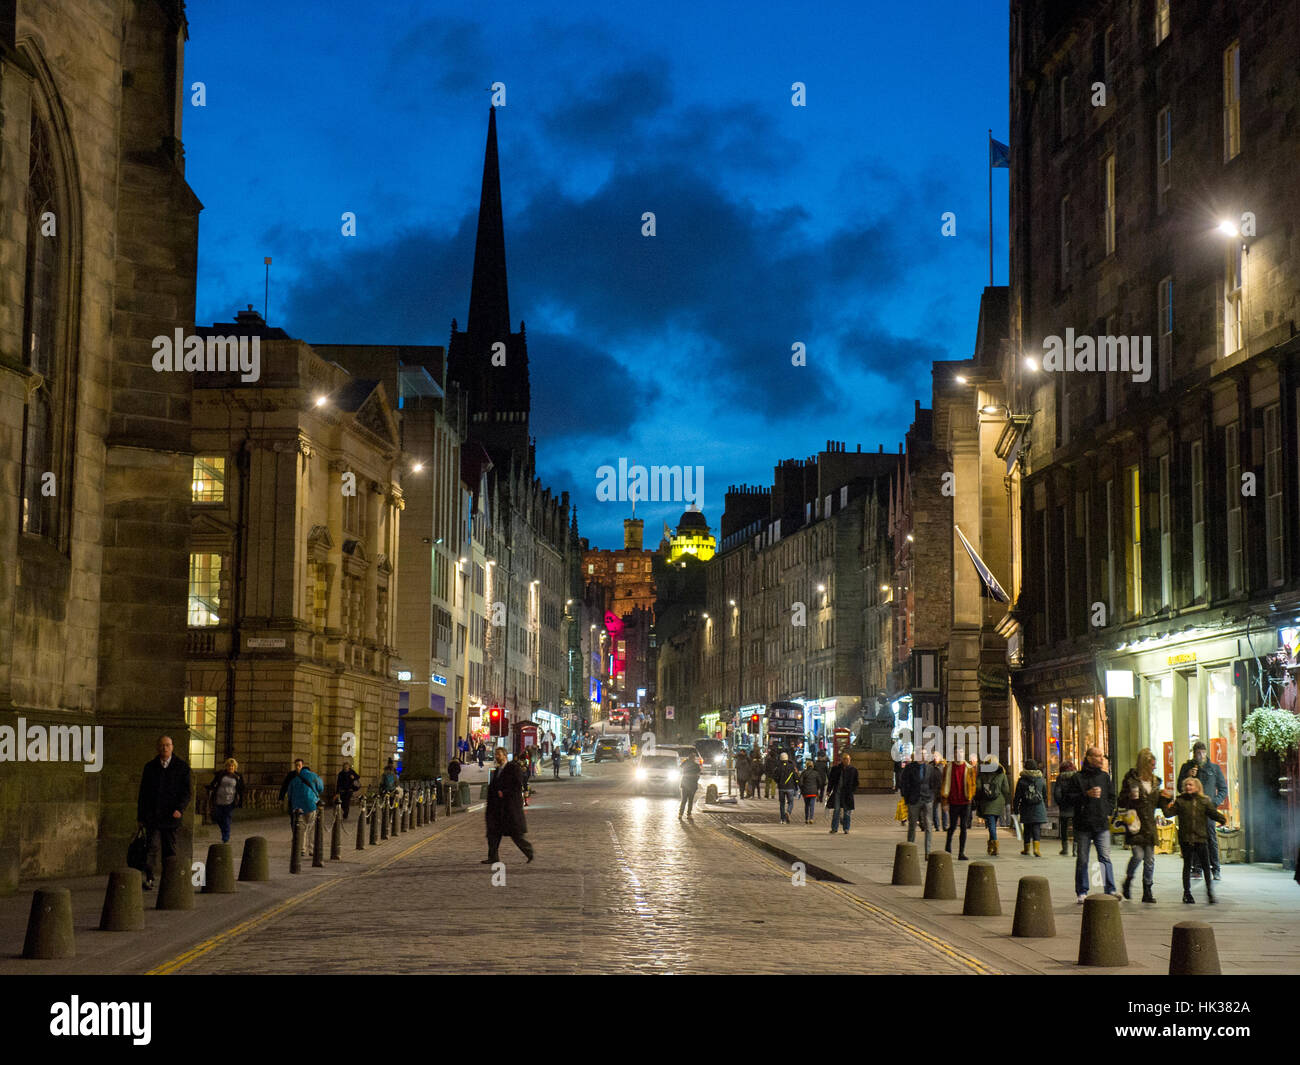 Edimbourg, Ecosse - le Royal Mile/ High street, dans la vieille ville d'Édimbourg avec des personnes non identifiées. Banque D'Images